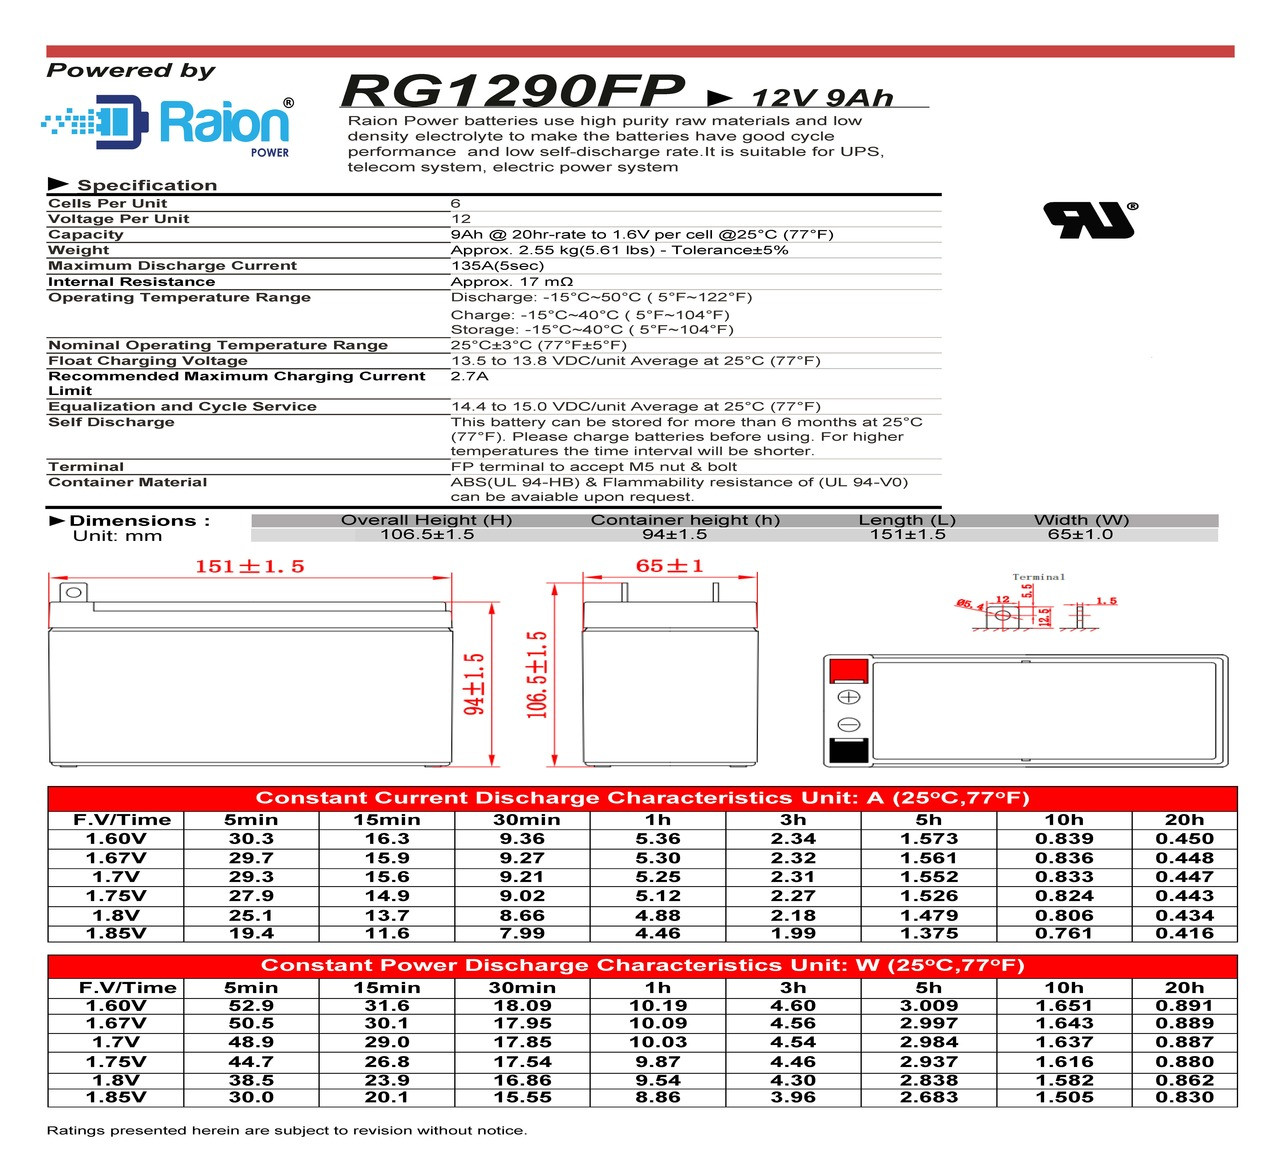 Raion Power 12V 9Ah Battery Data Sheet for Interstate Nut & Bolt SLA1069